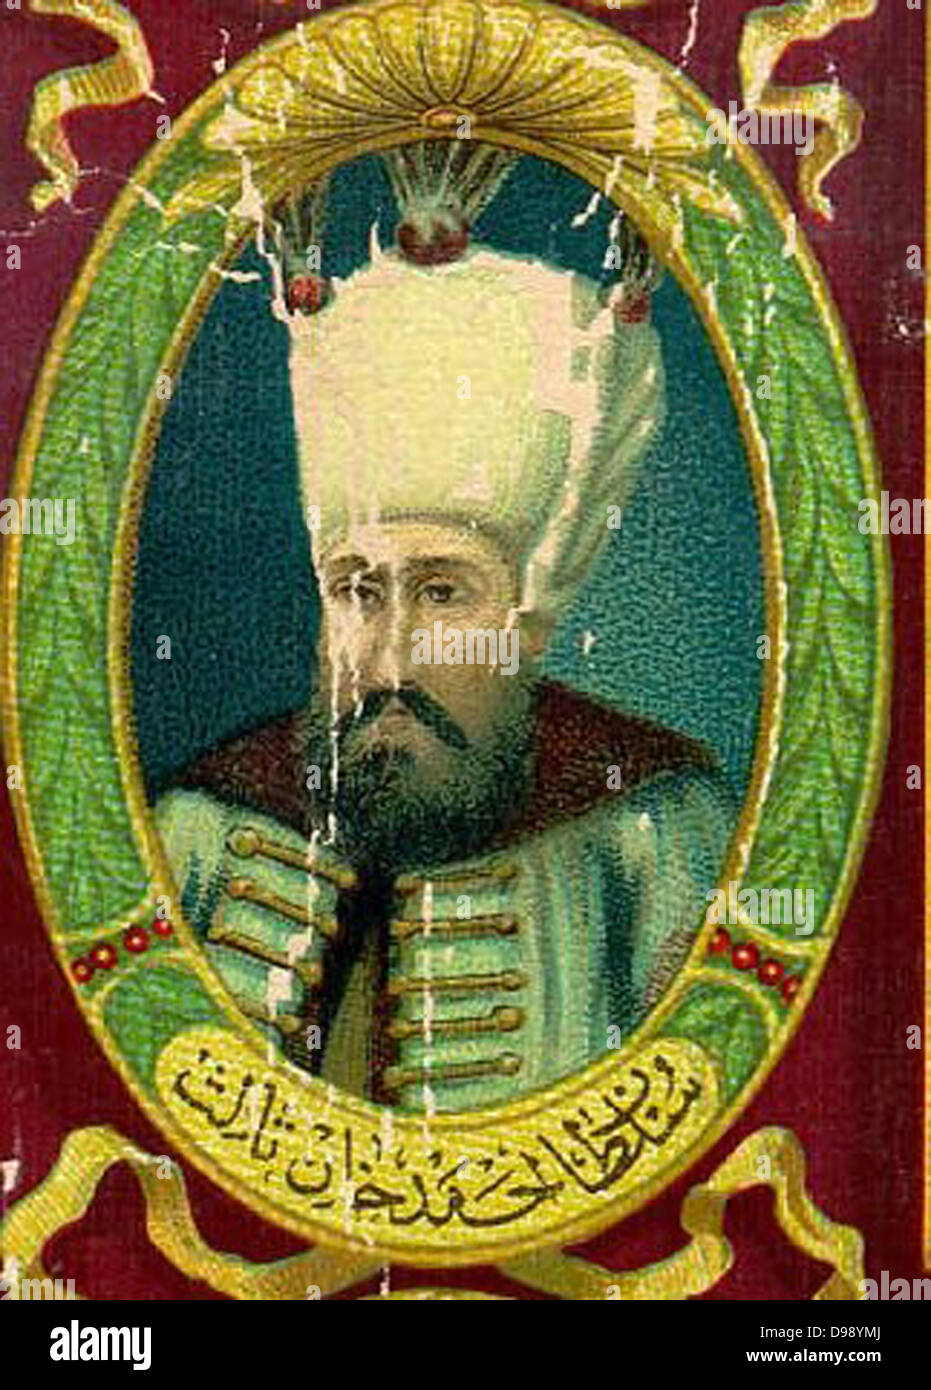 Ahmed III 1673 - Juli 1, 1736 Sultan des Osmanischen Reiches und ein Sohn von Sultan Mehmet IV (1648-87). Er folgte auf den Thron im Jahr 1703 nach der Abdankung seines Bruders Mustafa II. Stockfoto